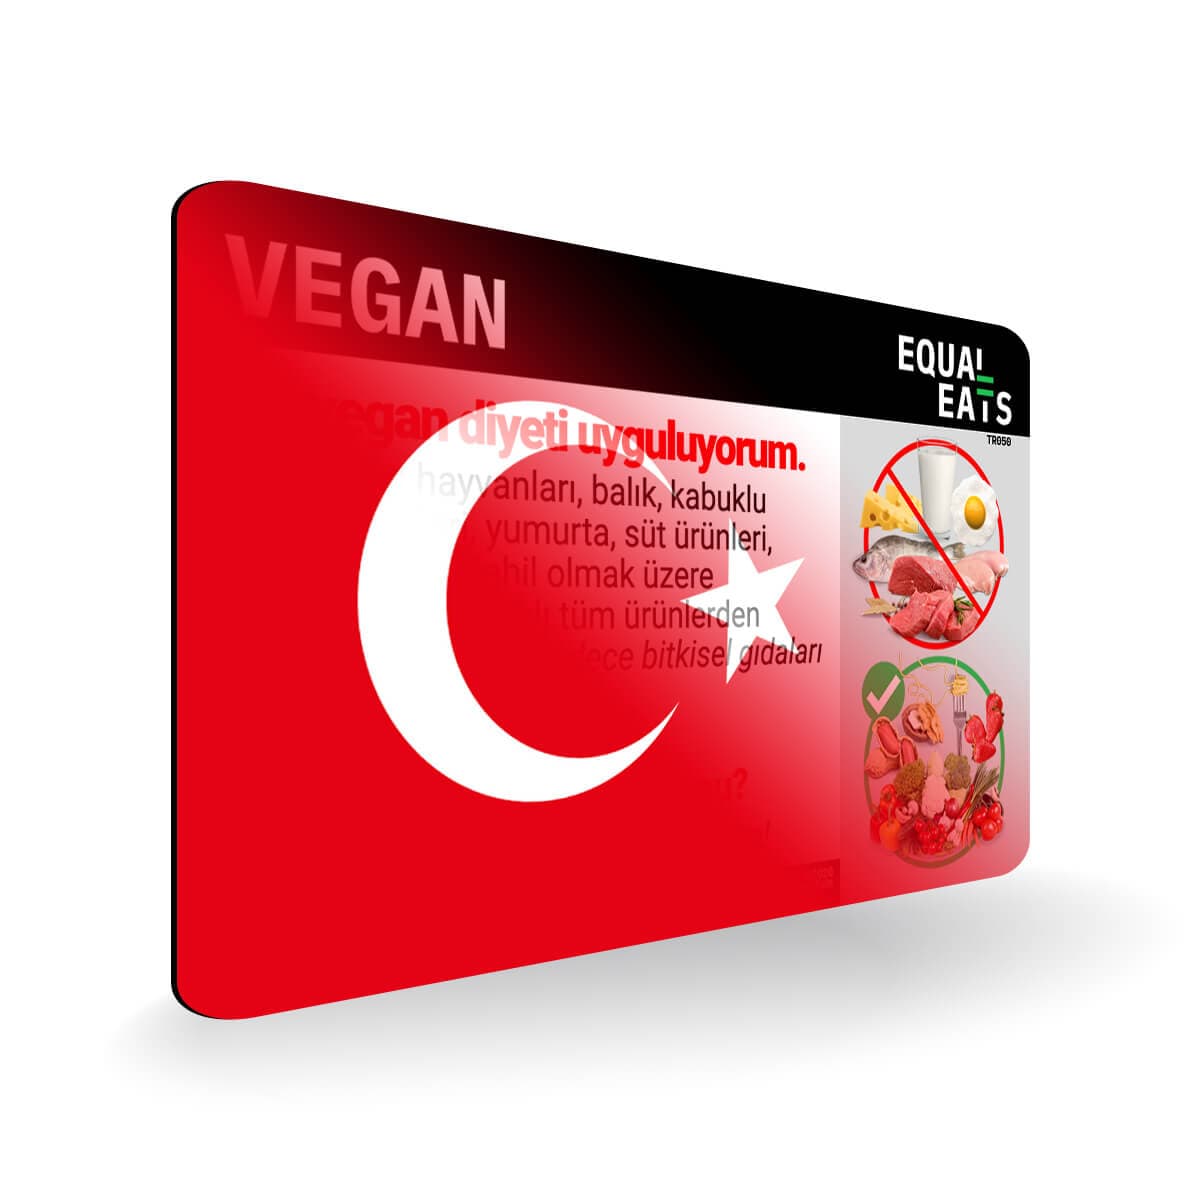 Vegan Diet in Turkish. Vegan Card for Turkey